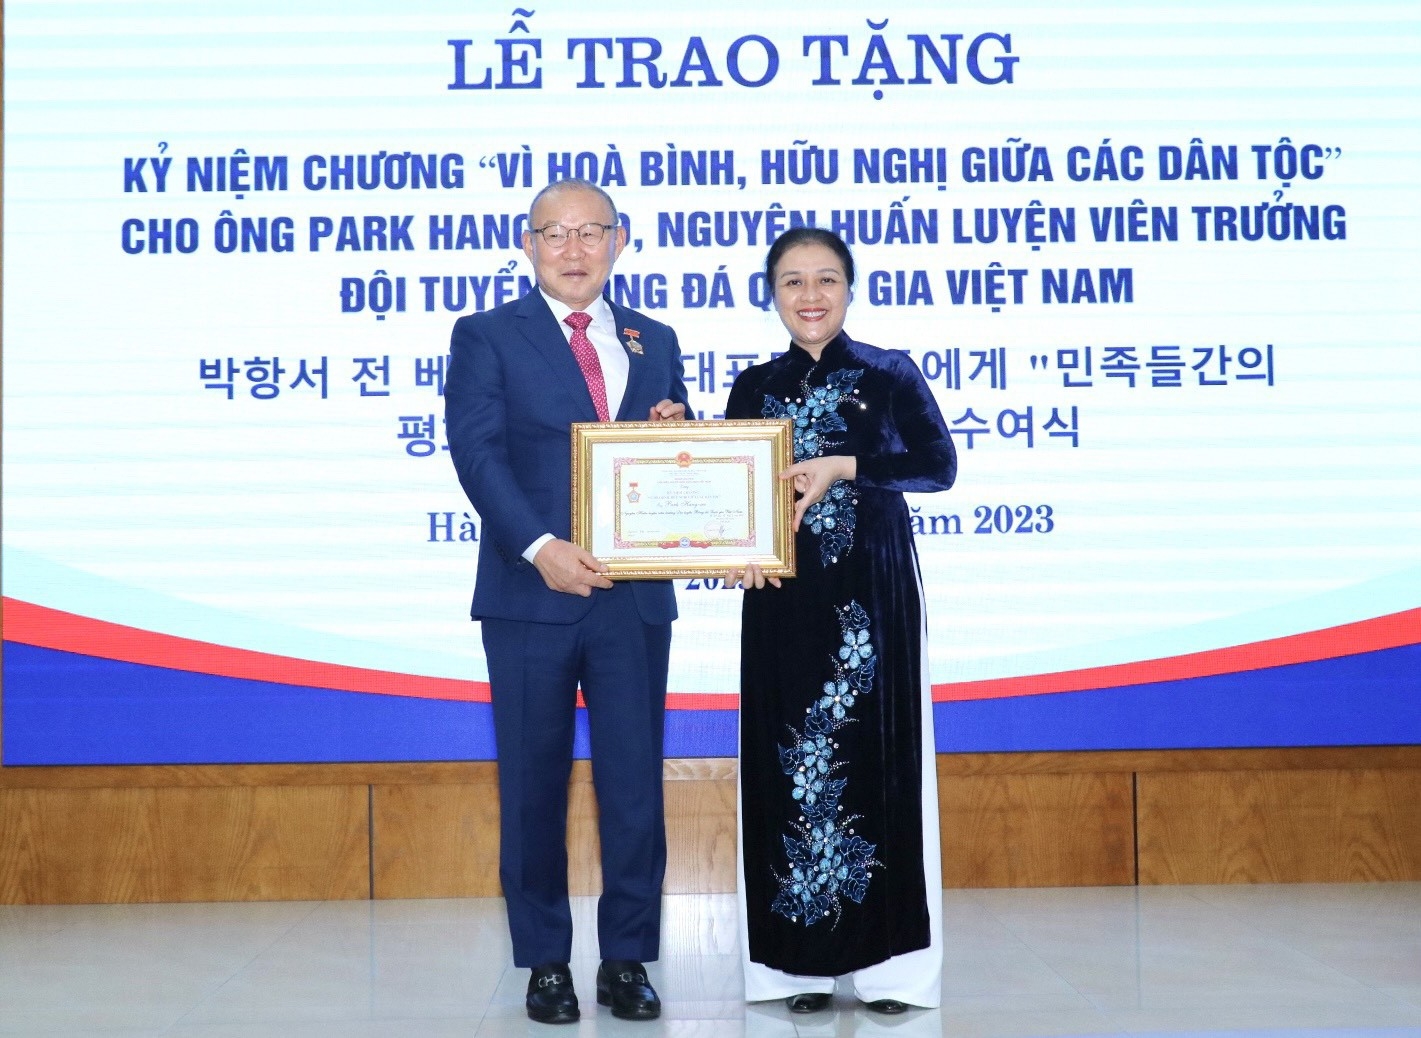 Вручение памятной медали «За мир и дружбу между народами» тренеру Пак Хан Со